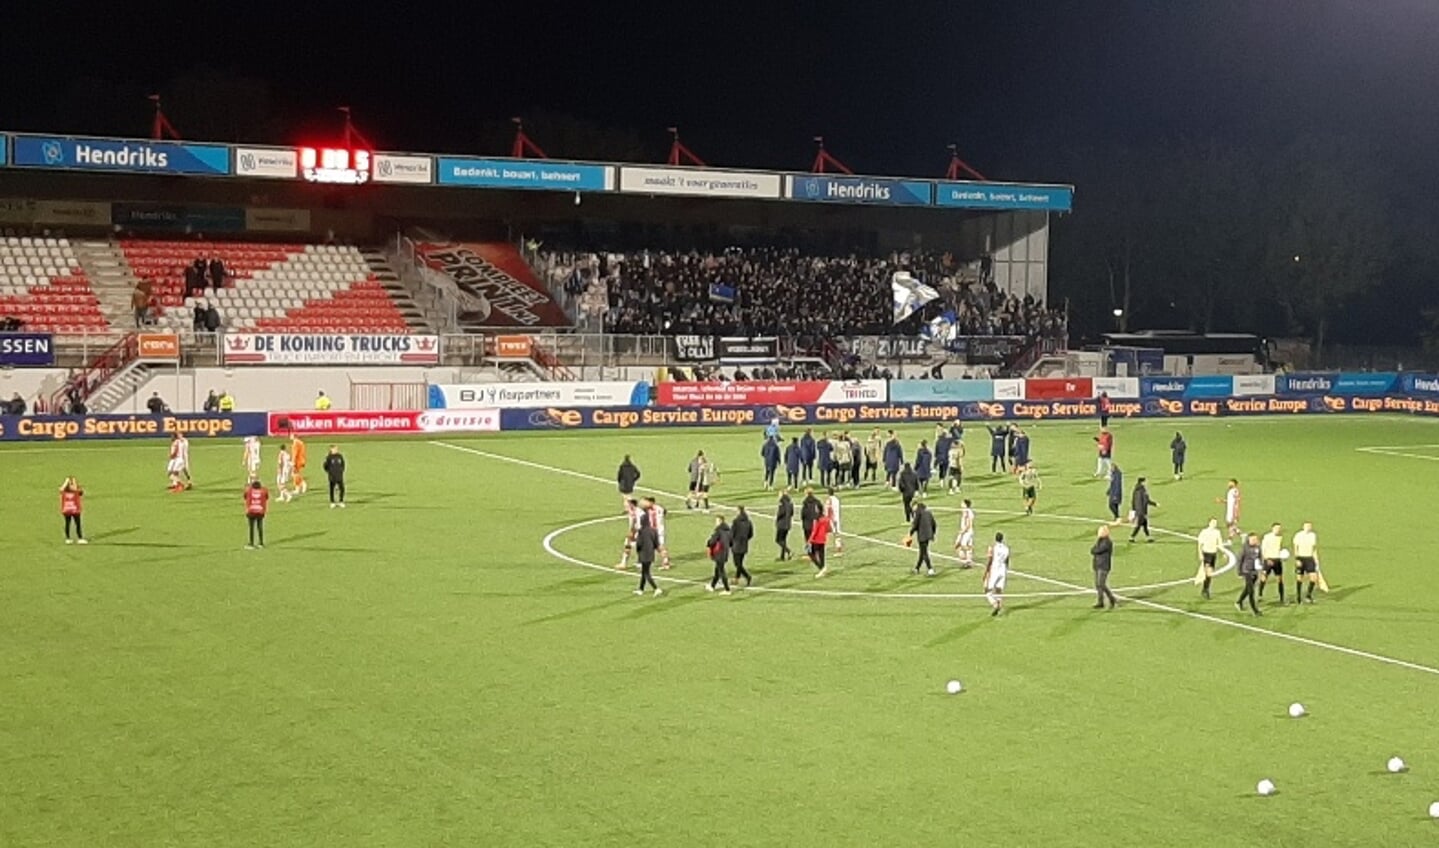 Het zit erop. PEC Zwolle wint met 0-5 tot genoegen van de Zwolse aanhang. 